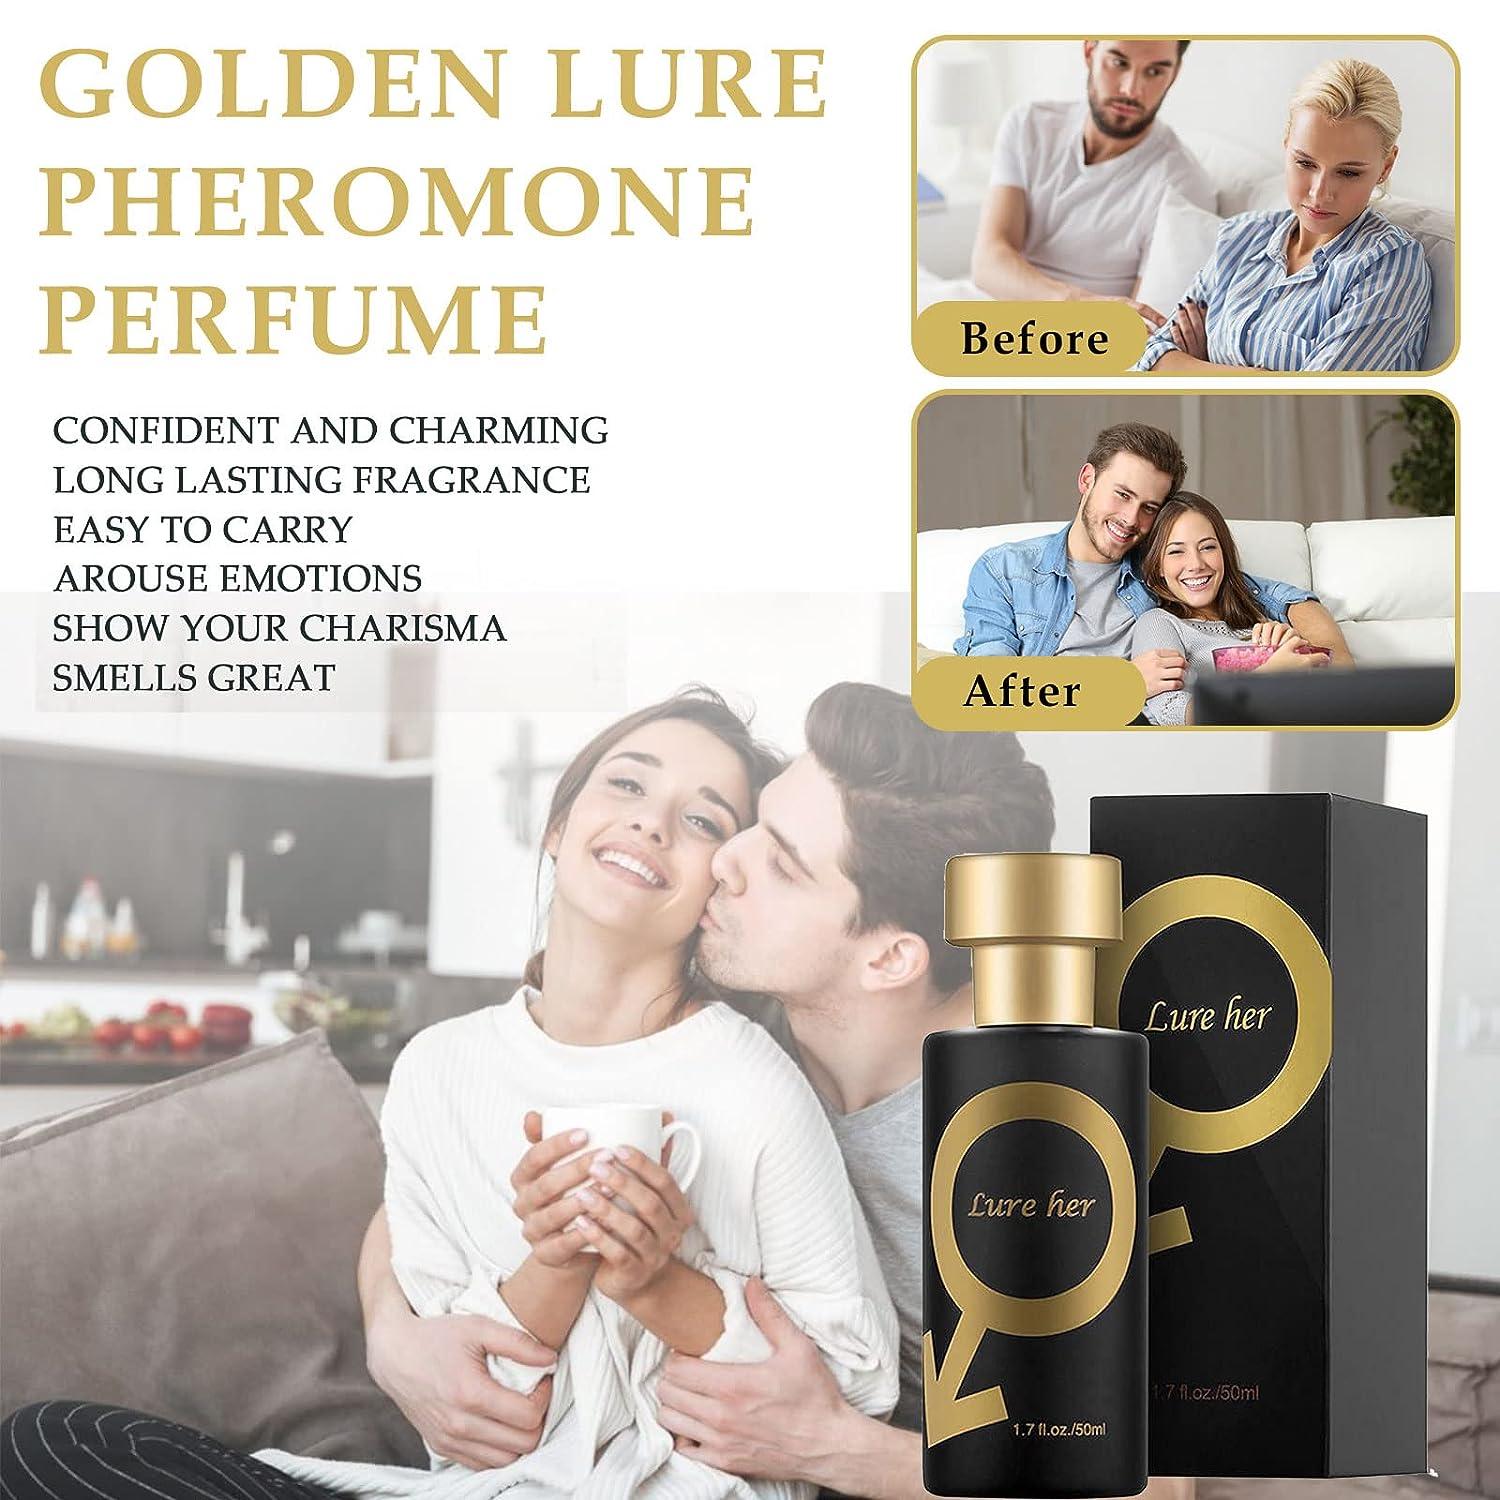 Hcomine Lure Her Perfume para hombres, Colonia de feromonas doradas para  hombres Atraer mujeres, 50 ml (Men)